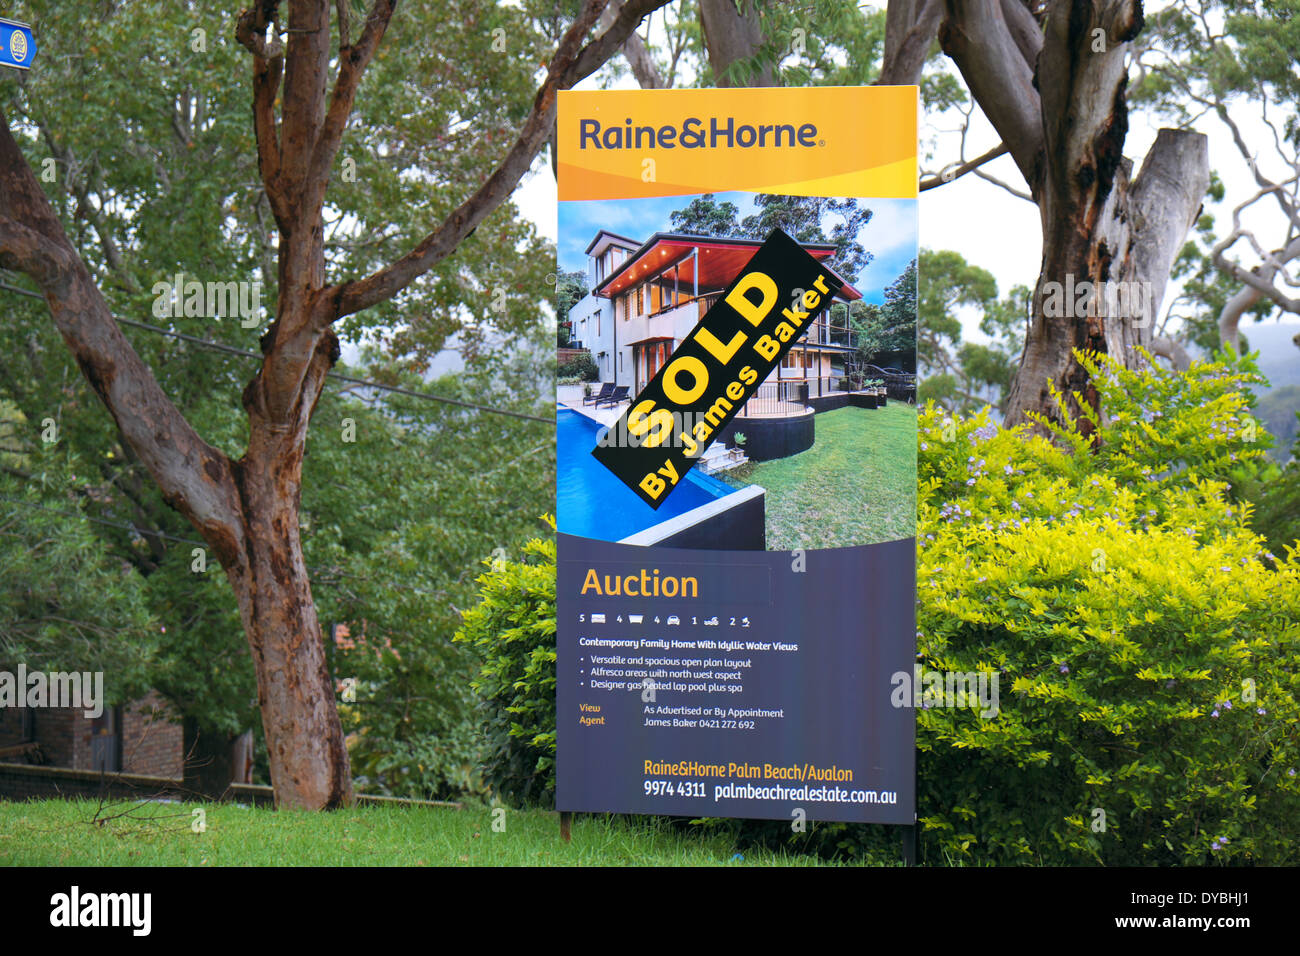 Propriété résidentielle à vendre/vendue à Avalon, sydney, australie Banque D'Images